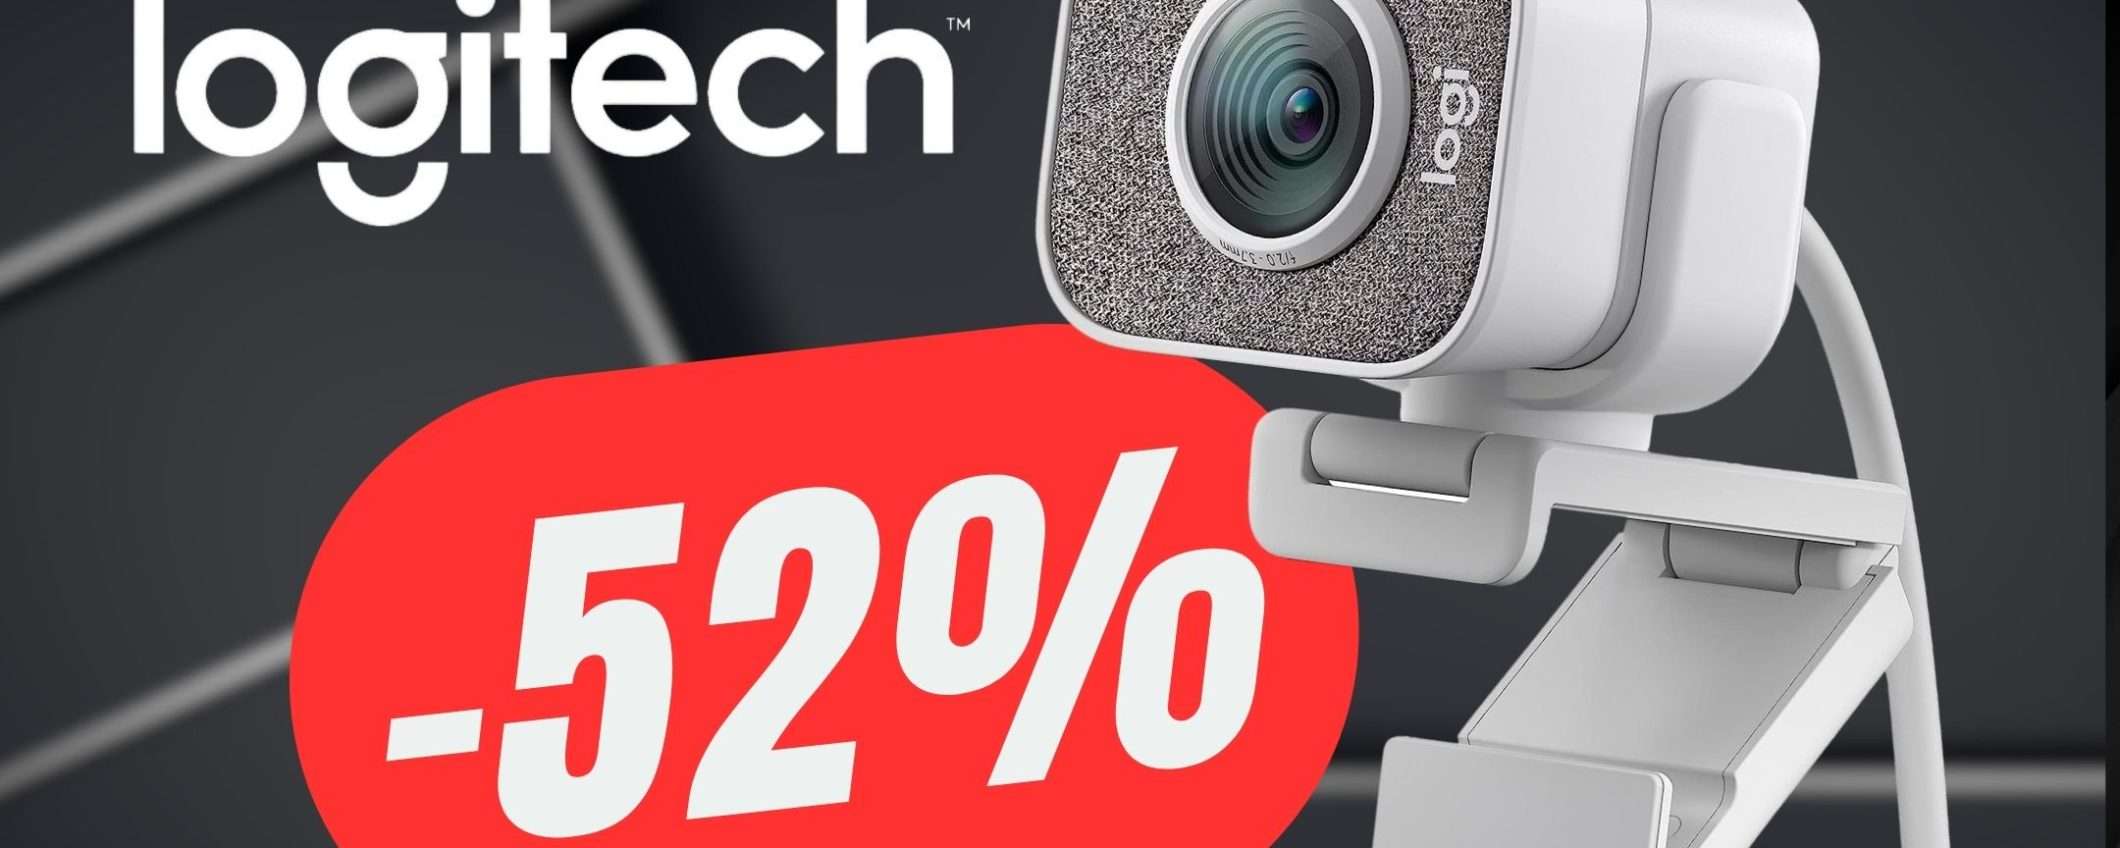 Questa Webcam di Logitech (SCONTATA del -52%) ha la qualità di una Videocamera!